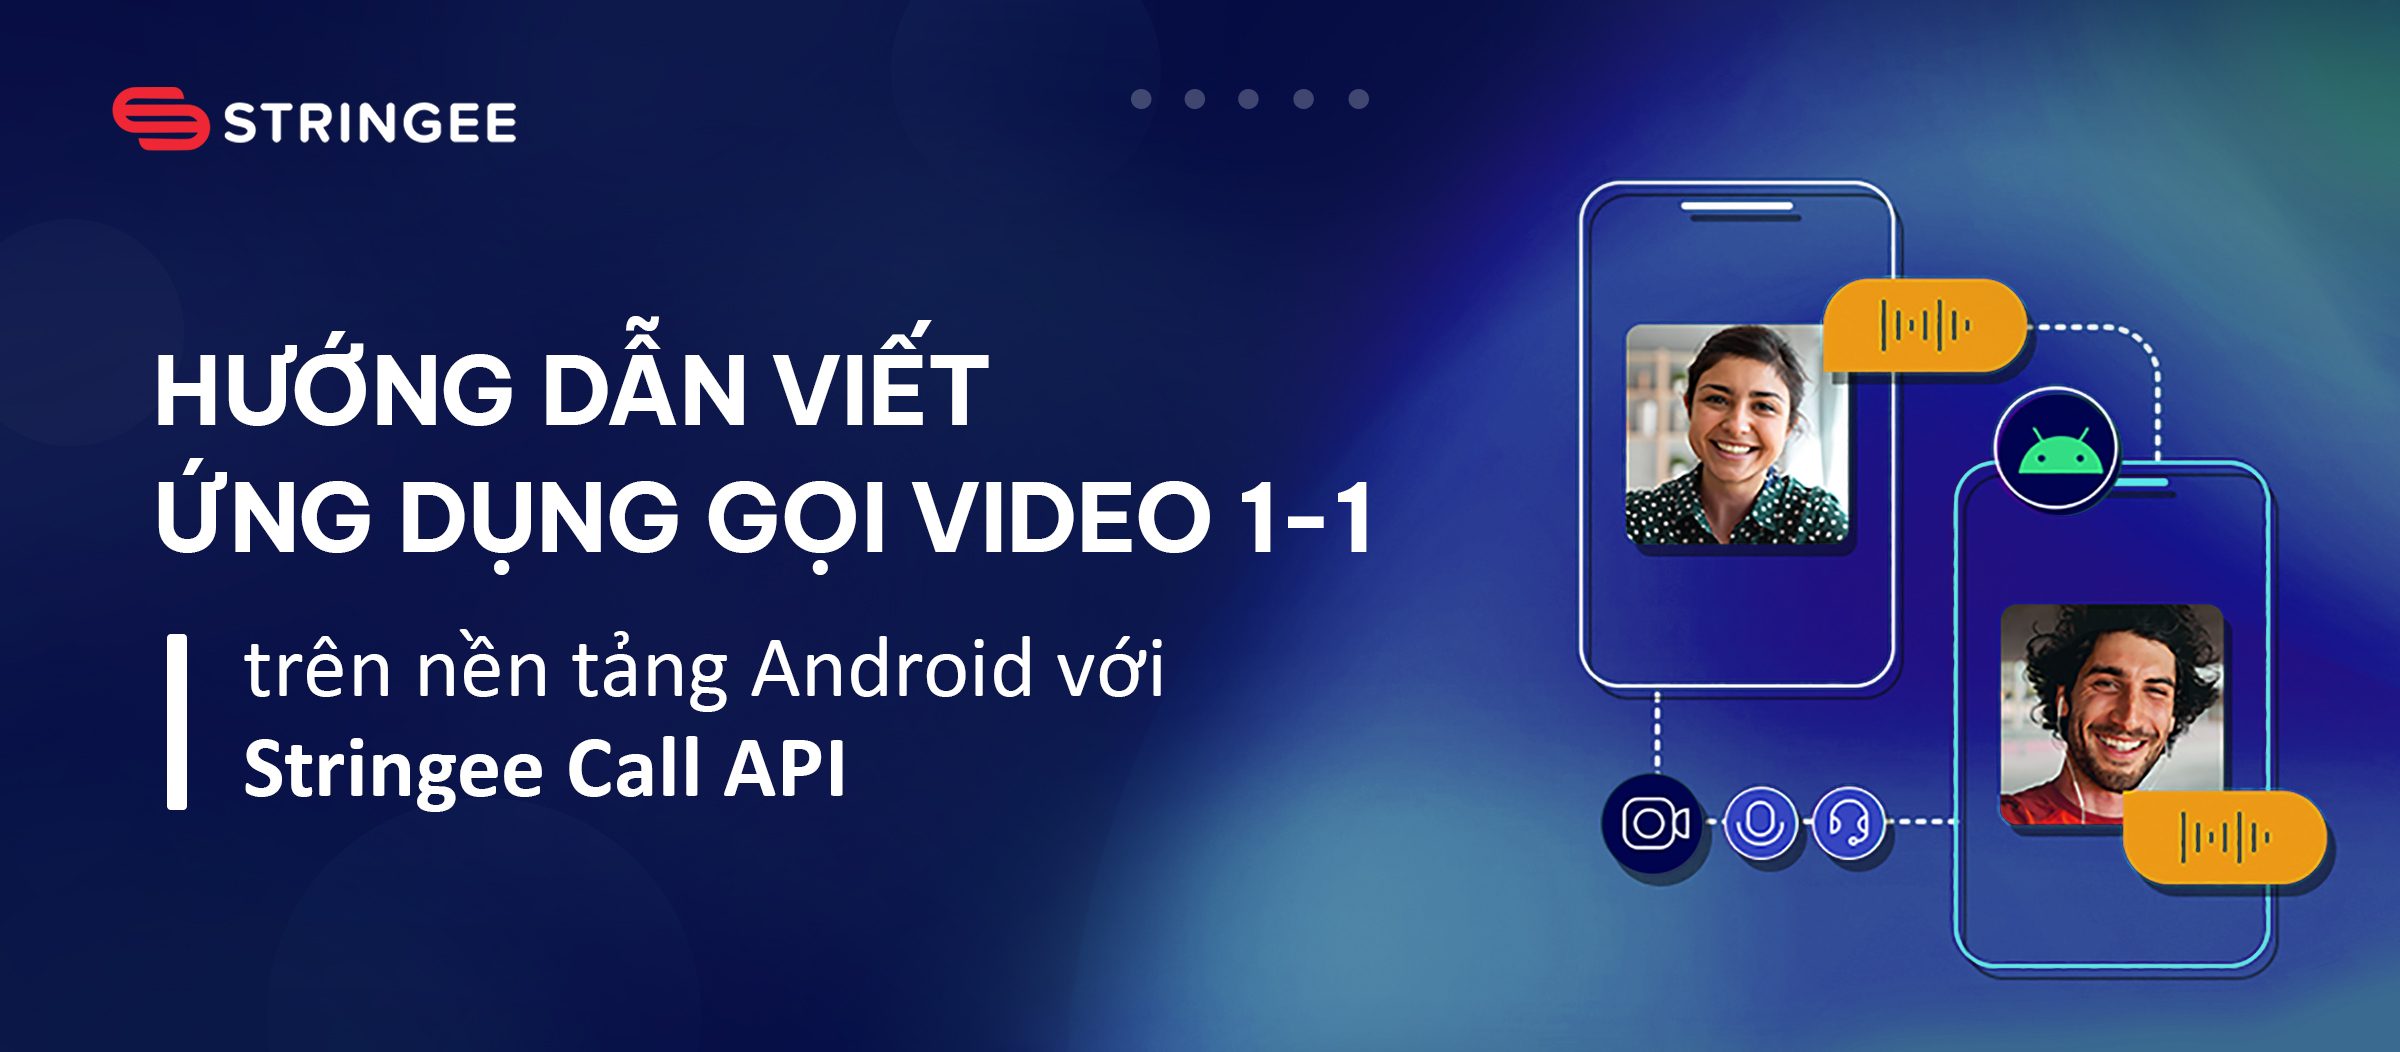 Hướng dẫn xây dựng ứng dụng gọi video 1-1 trên nền tảng Android với Stringee Call API